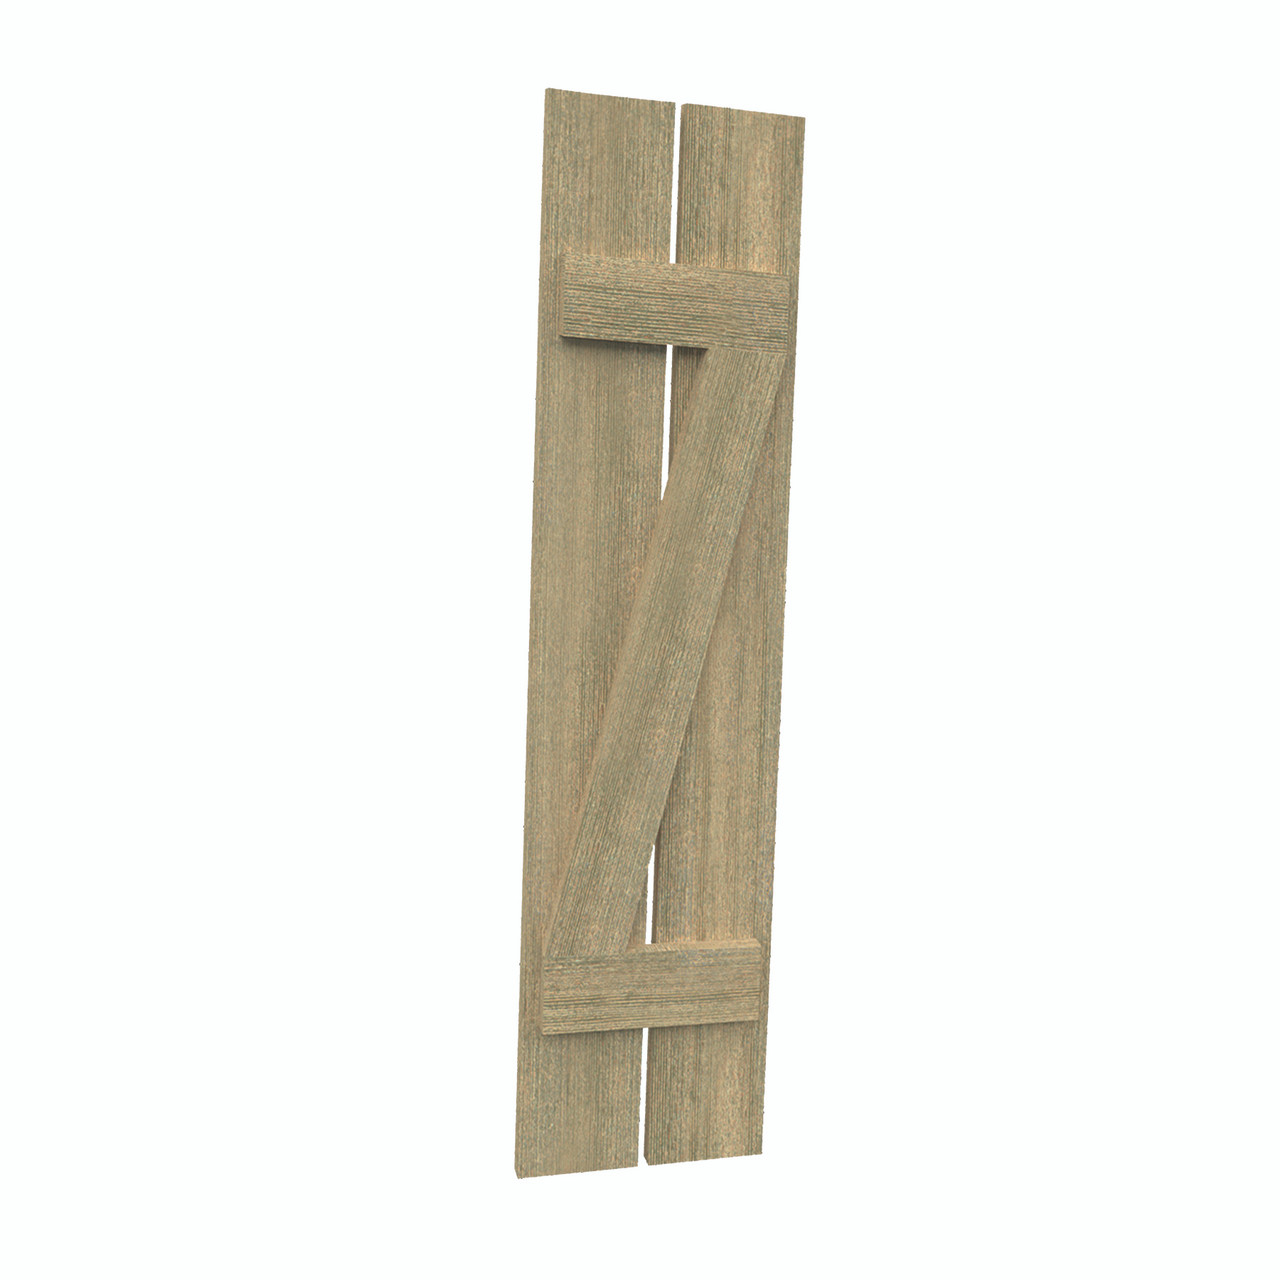 12 inch by 53 inch Plank Shutter with 2-Plank, Z-Batten